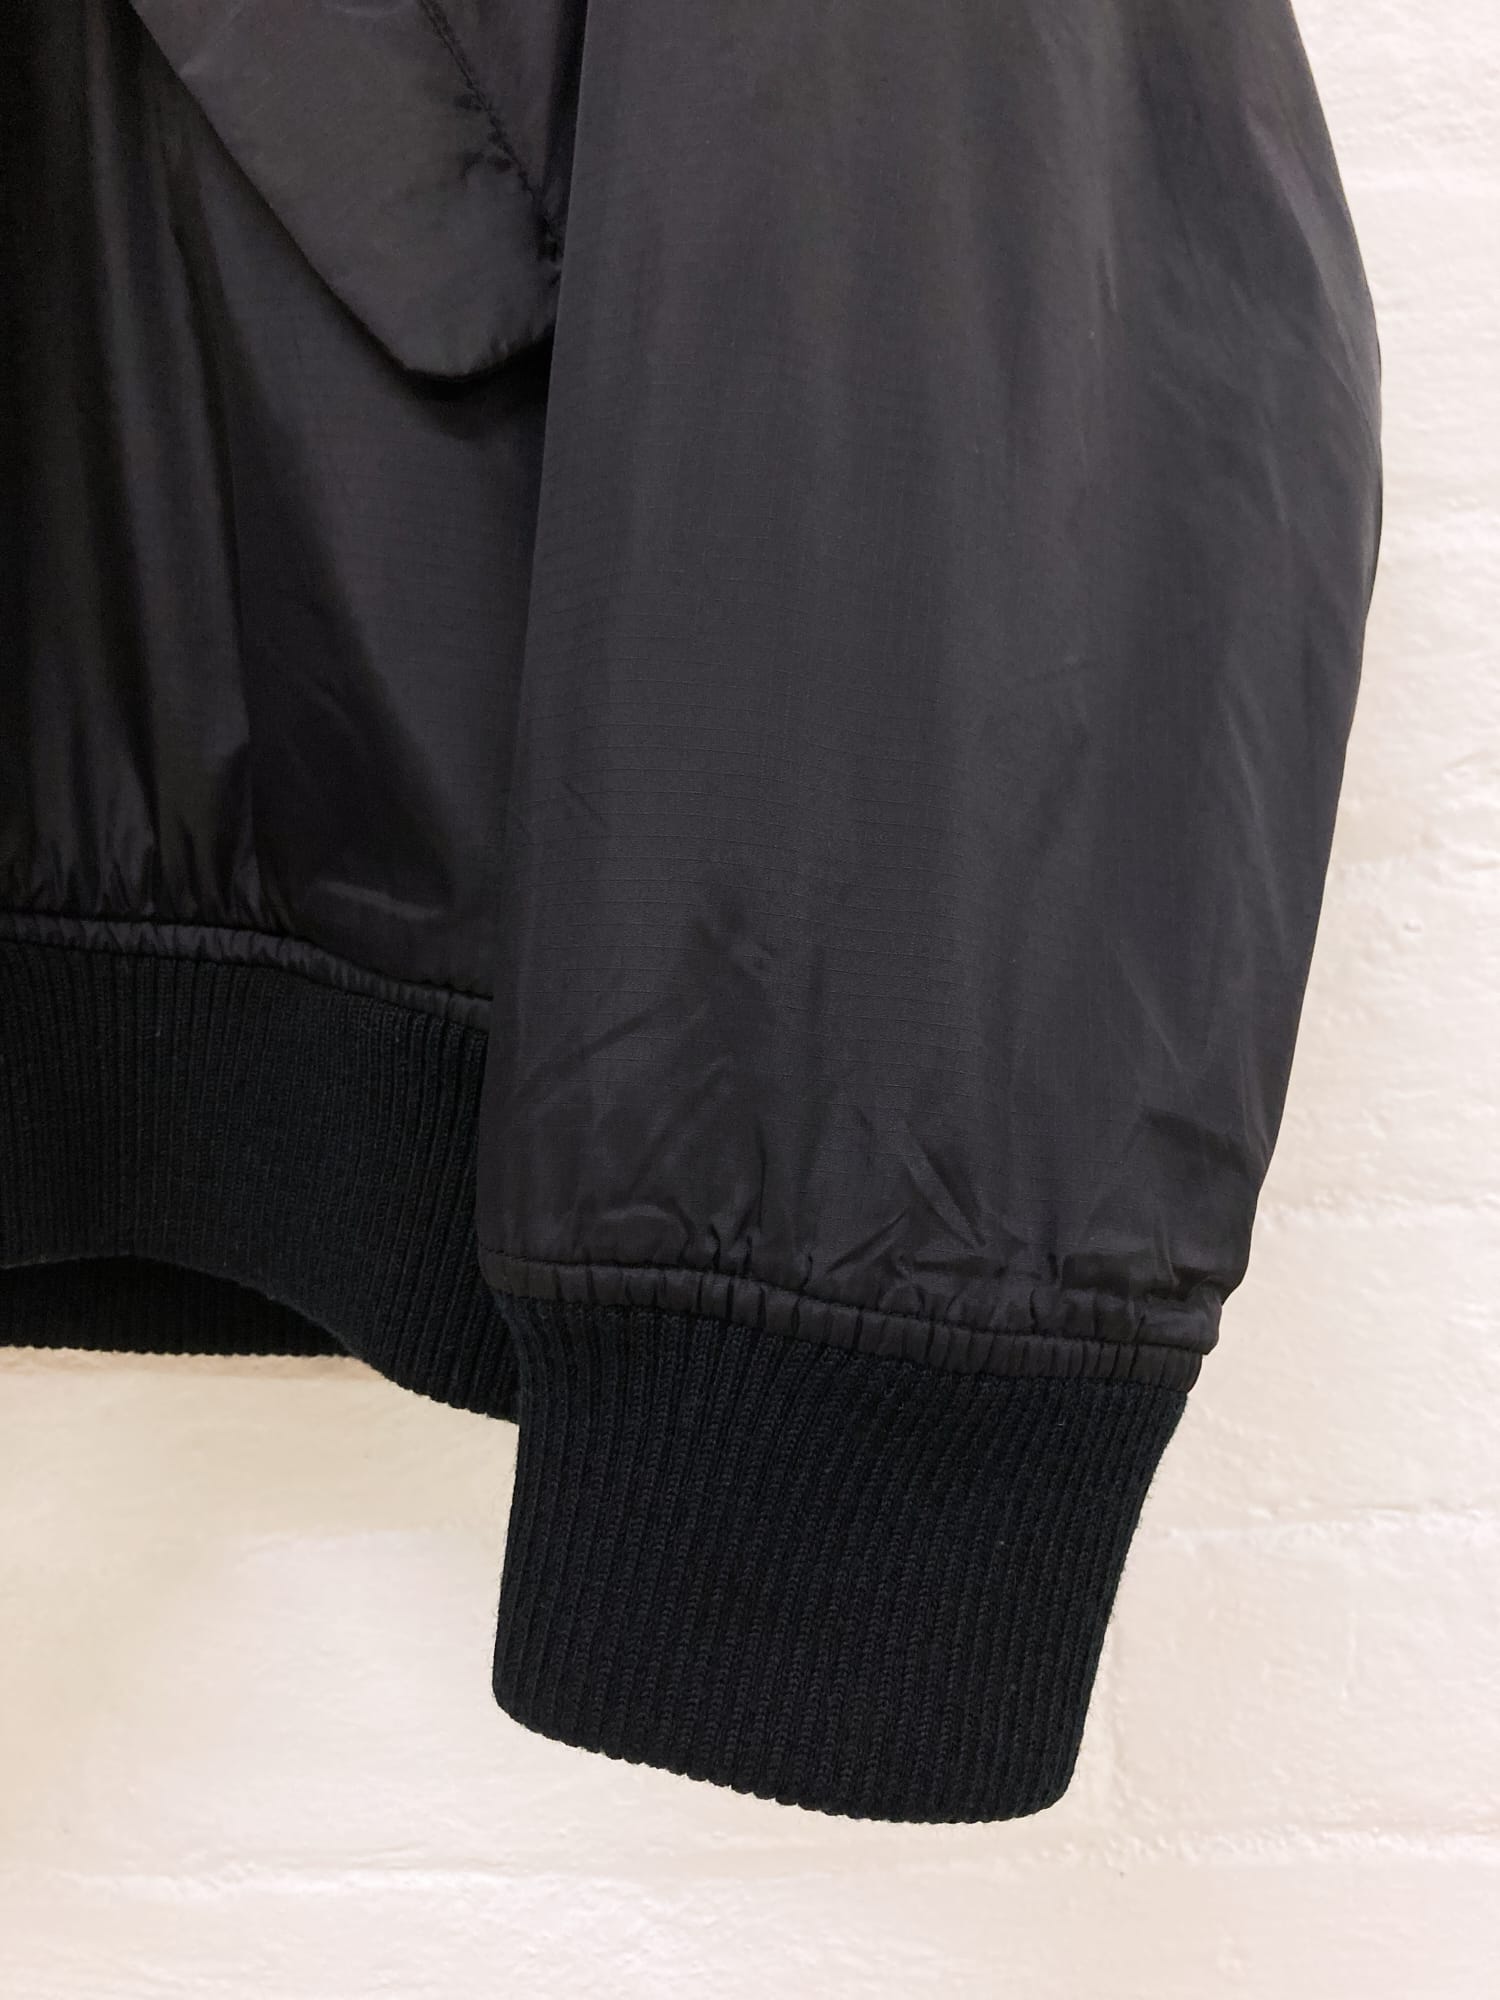 Yohji Yamamoto Y’s for living black nylon fleece lined bomber jacket